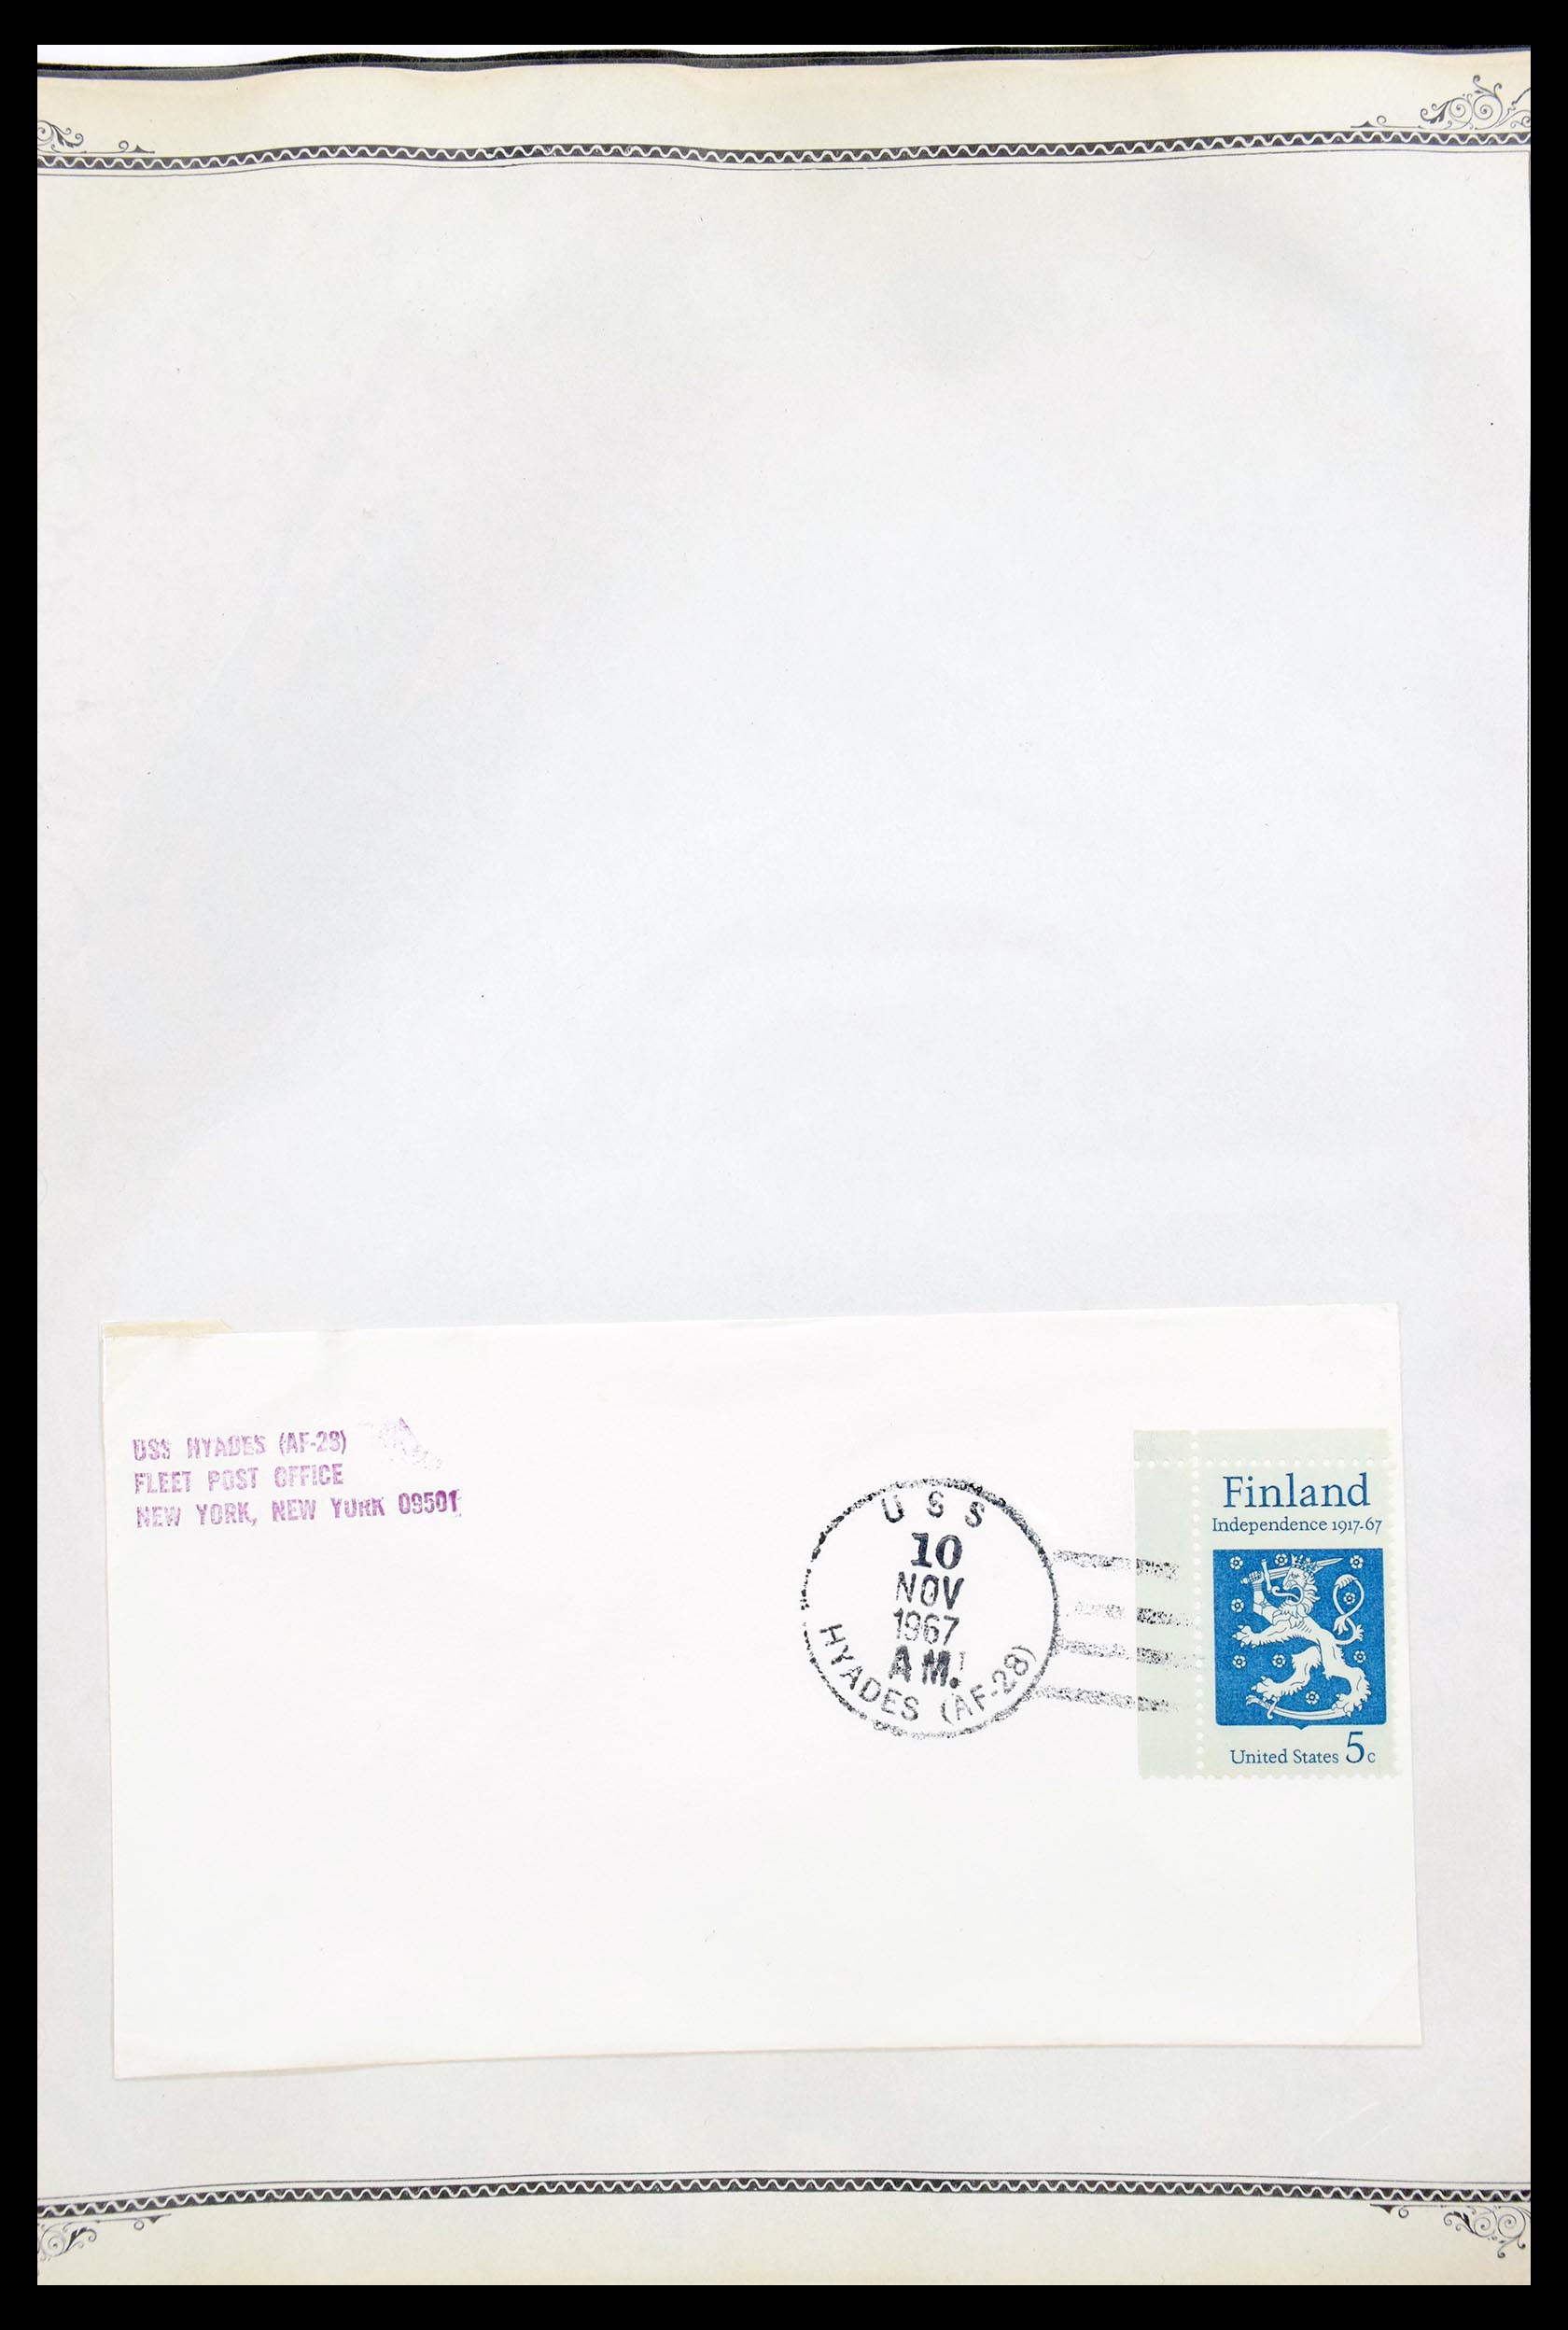 30341 024 - 30341 USA scheepspost brieven 1930-1970.